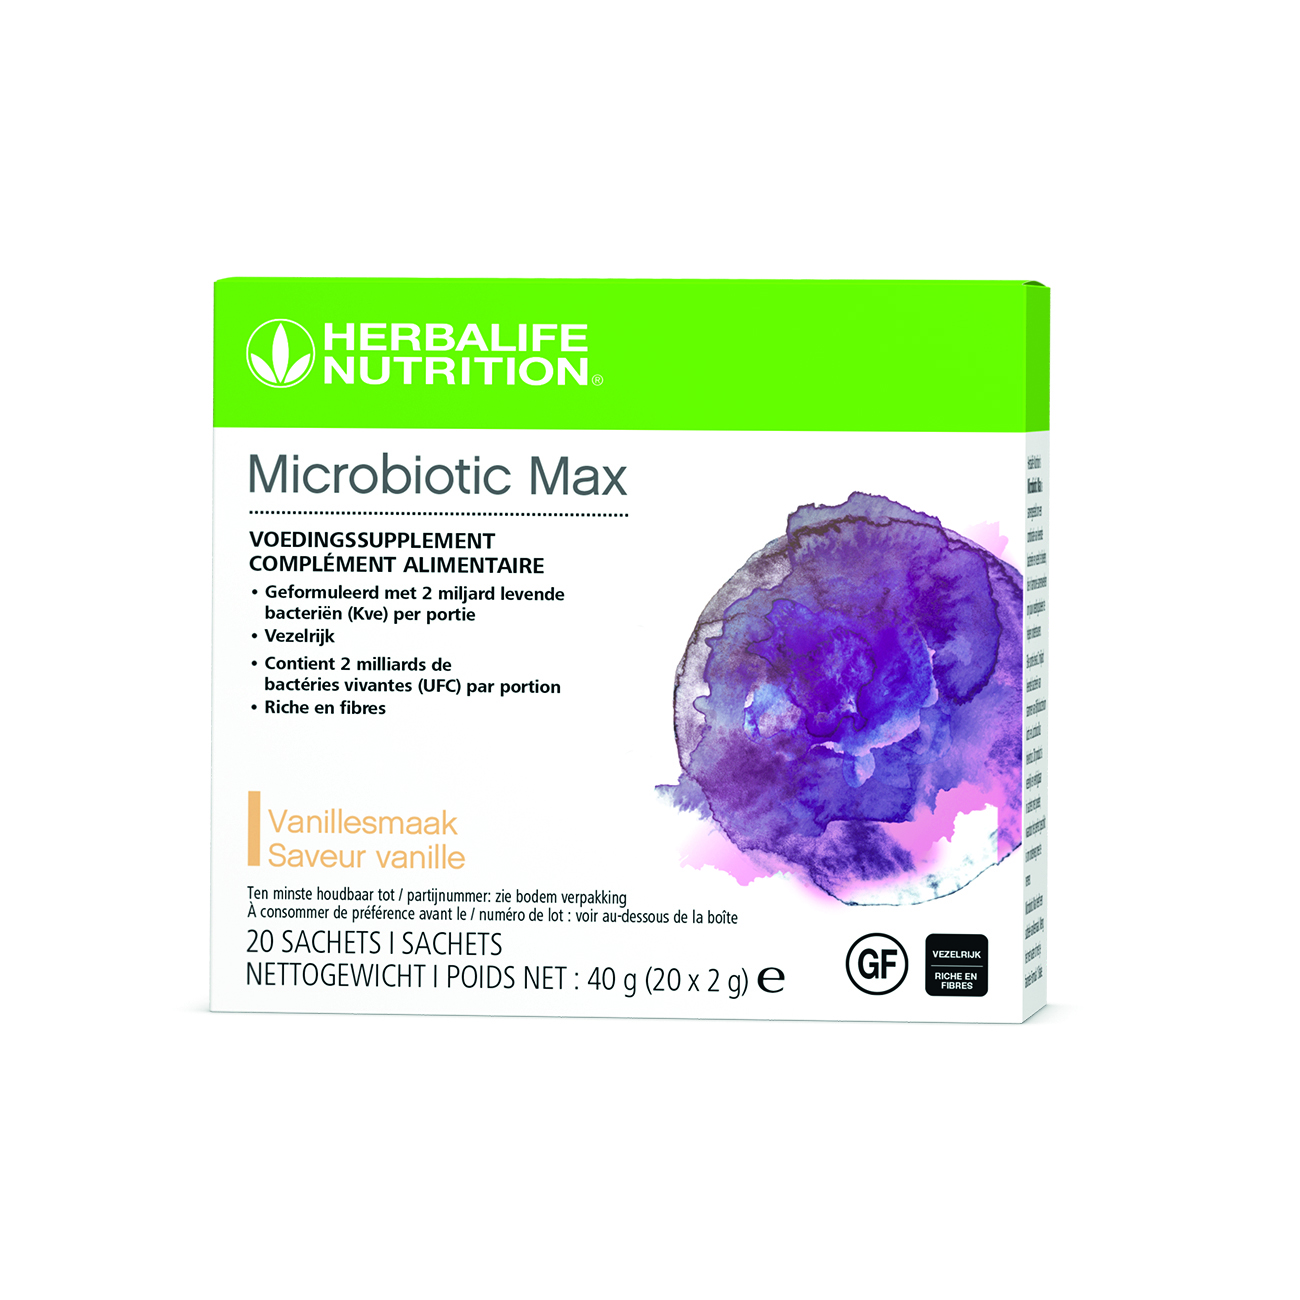 Microbiotic Max est un complément alimentaire en poudre formulé avec des probiotiques et des fibres prébiotiques.